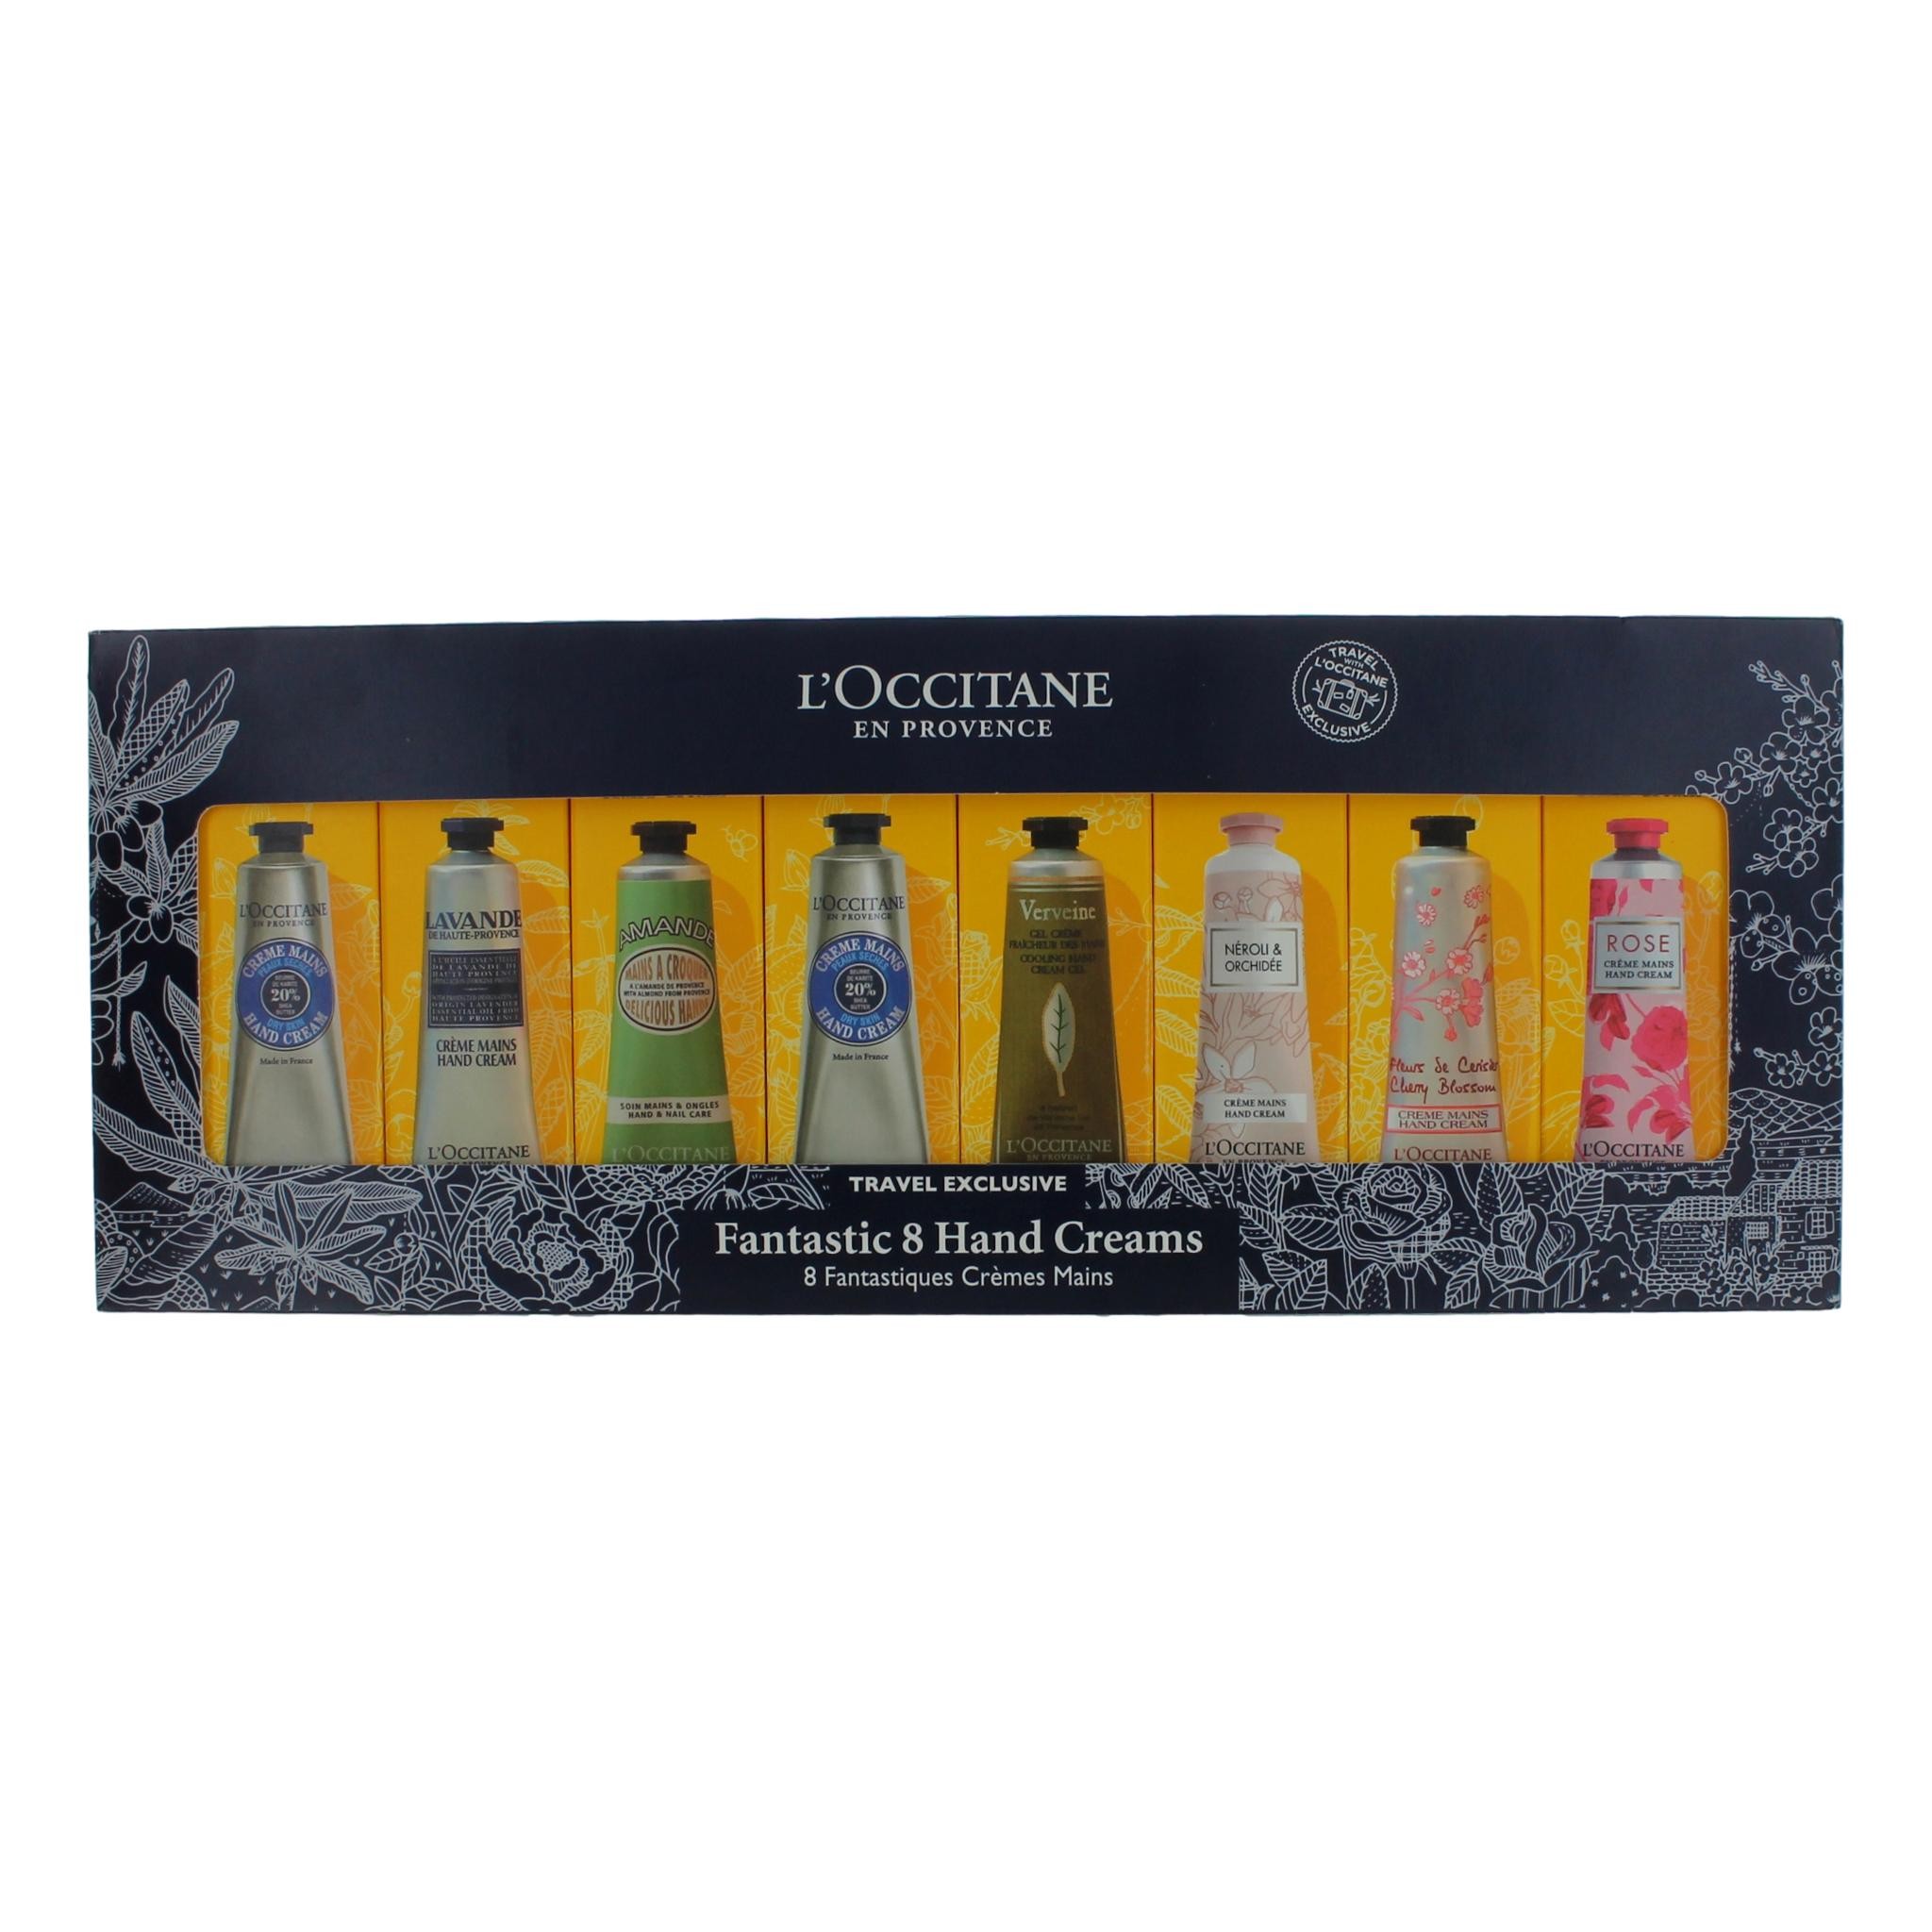 L'Occitane by L'Occitane Fantastic 8 Hand Creams for Unisex